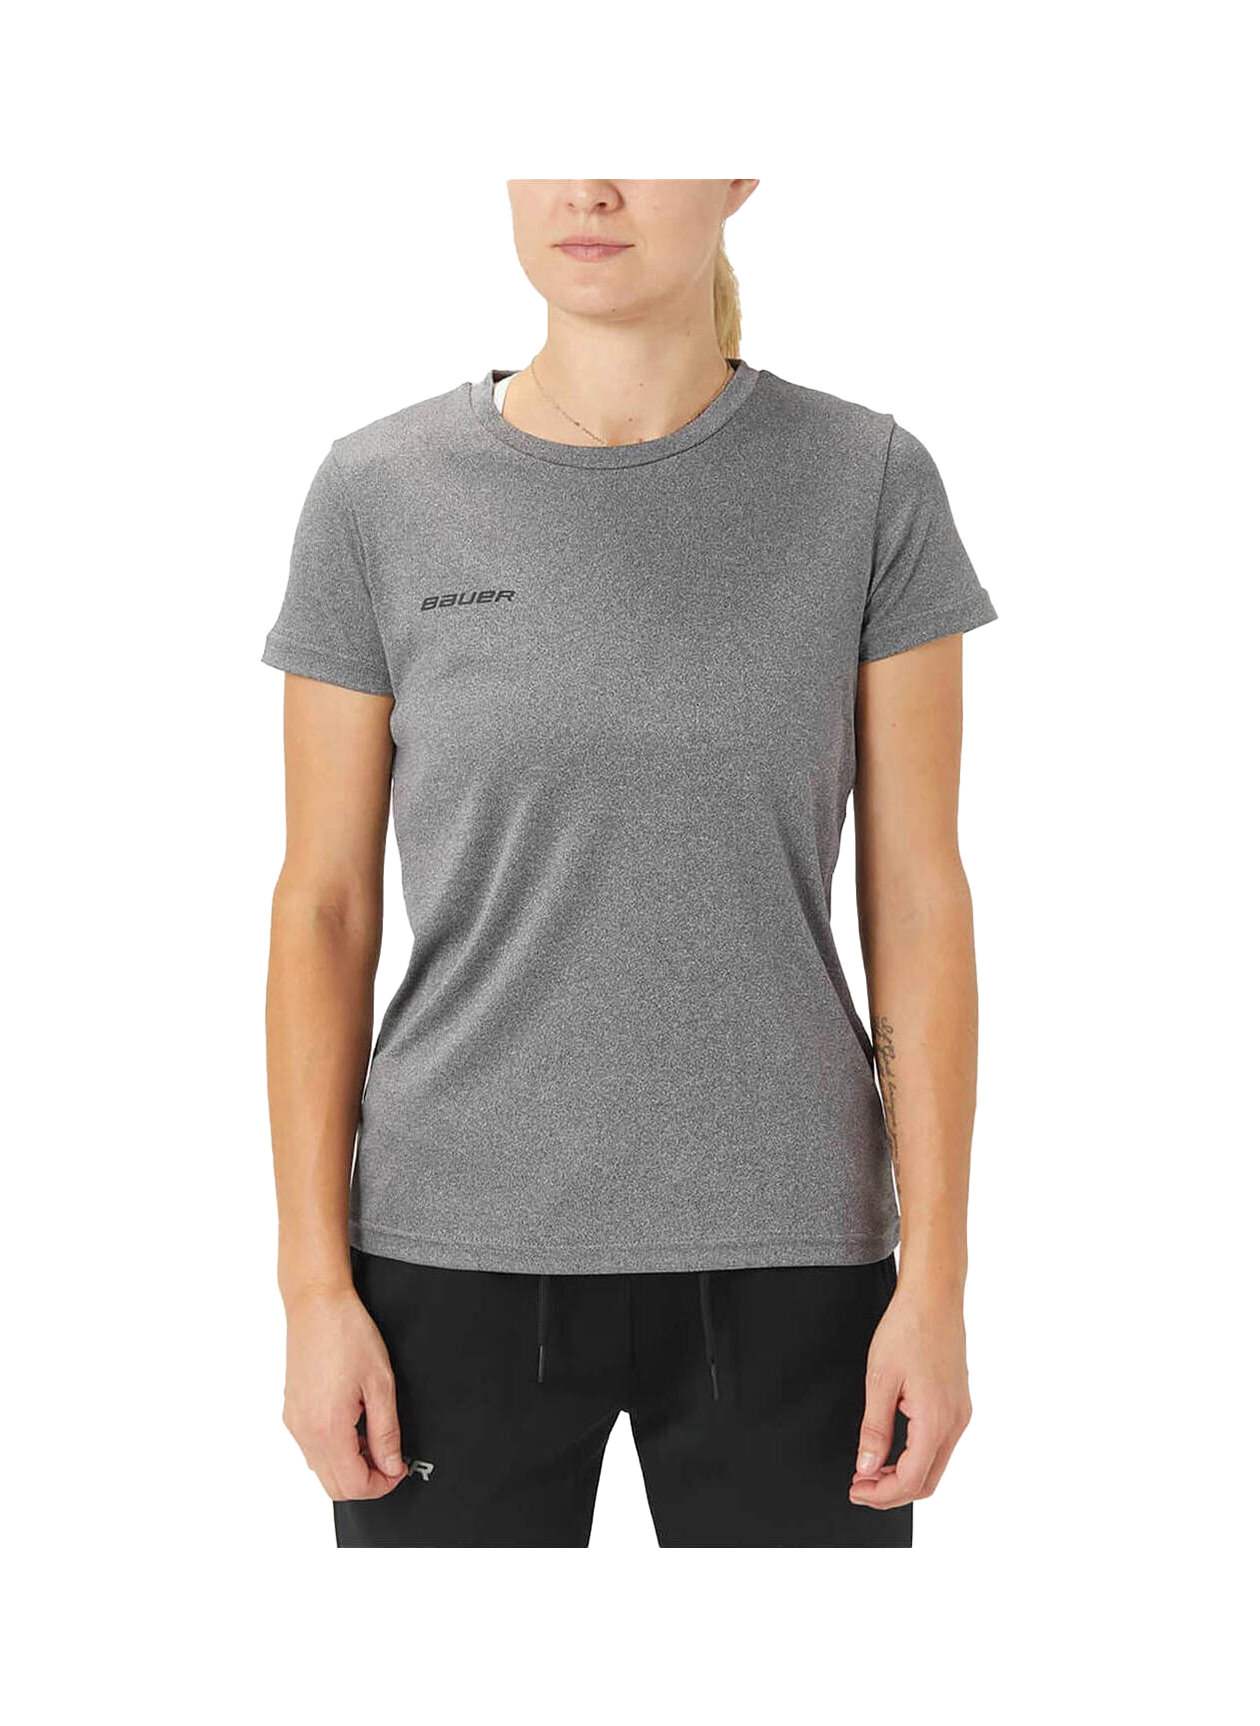 BAUER Women's Grey Vapor Team Tech T-Shirt